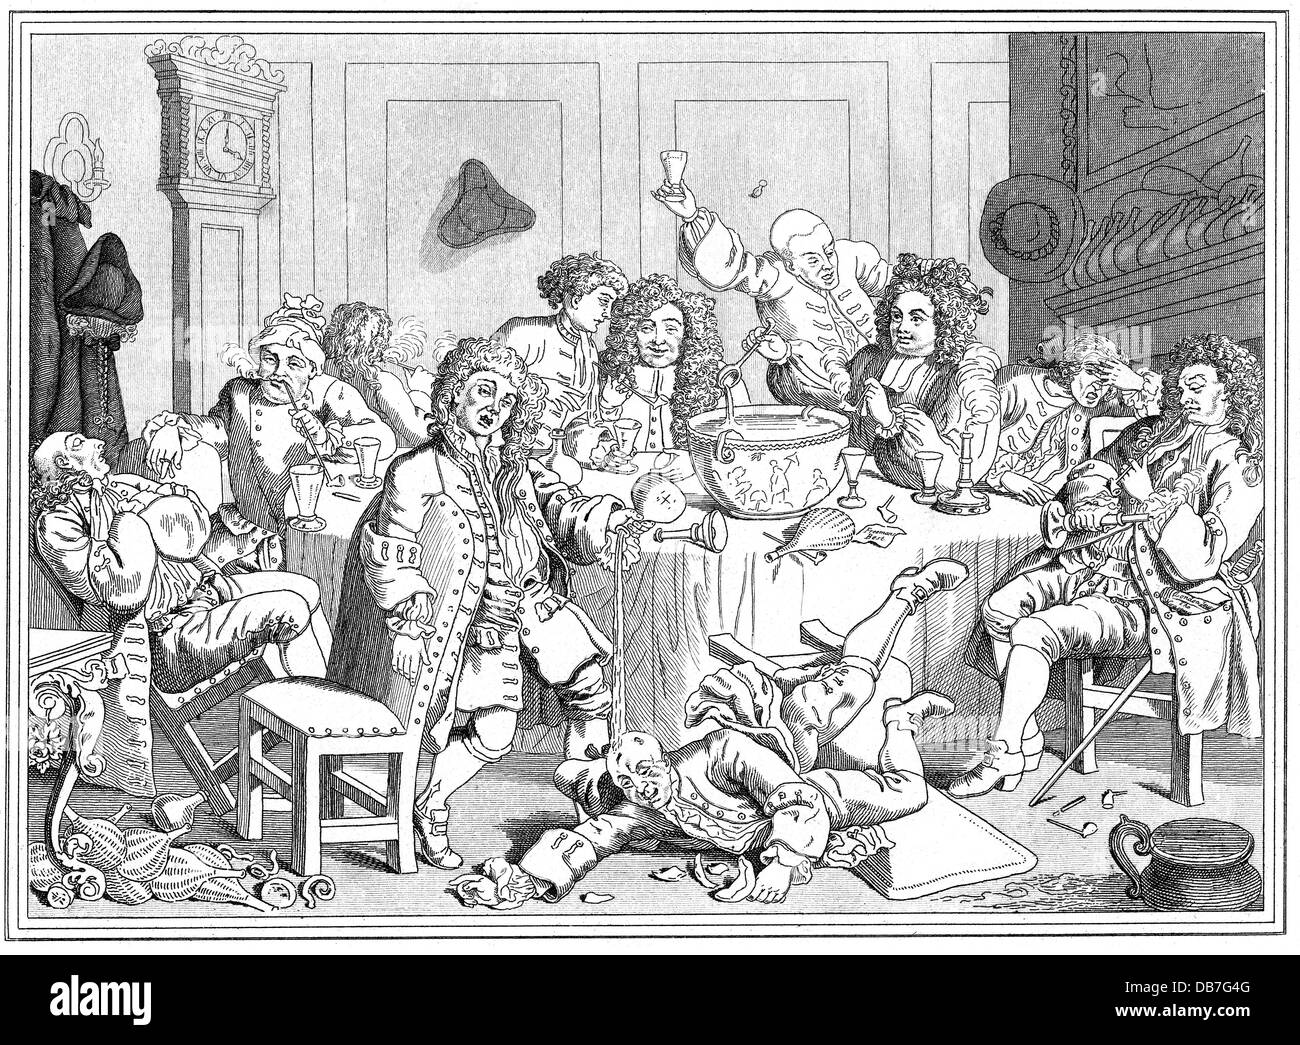 L'alcool, punch, Punch party at night, après William Hogarth (1697 - 1764), gravure sur cuivre, 18e siècle, 18e siècle, graphique, graphiques, gastronomie, demi-longueur, assis, s'asseoir, tables, table, chaises, fauteuil, tenir, tenir, verres, bol, bols, cuillères, cuillères, boire, boisson, l'abus d'alcool, l'abus d'alcool, de la conduite sous l'influence, l'ivresse, ivres, verser, déverser, poures out, répandu, tête-bêche, Tumbling, chute, chute, de mensonge, de carousal, carousals, société, sociétés, historique, historique, homme, l'homme, les hommes, les gens, l'artiste n'a pas d'auteur pour être effacé Banque D'Images